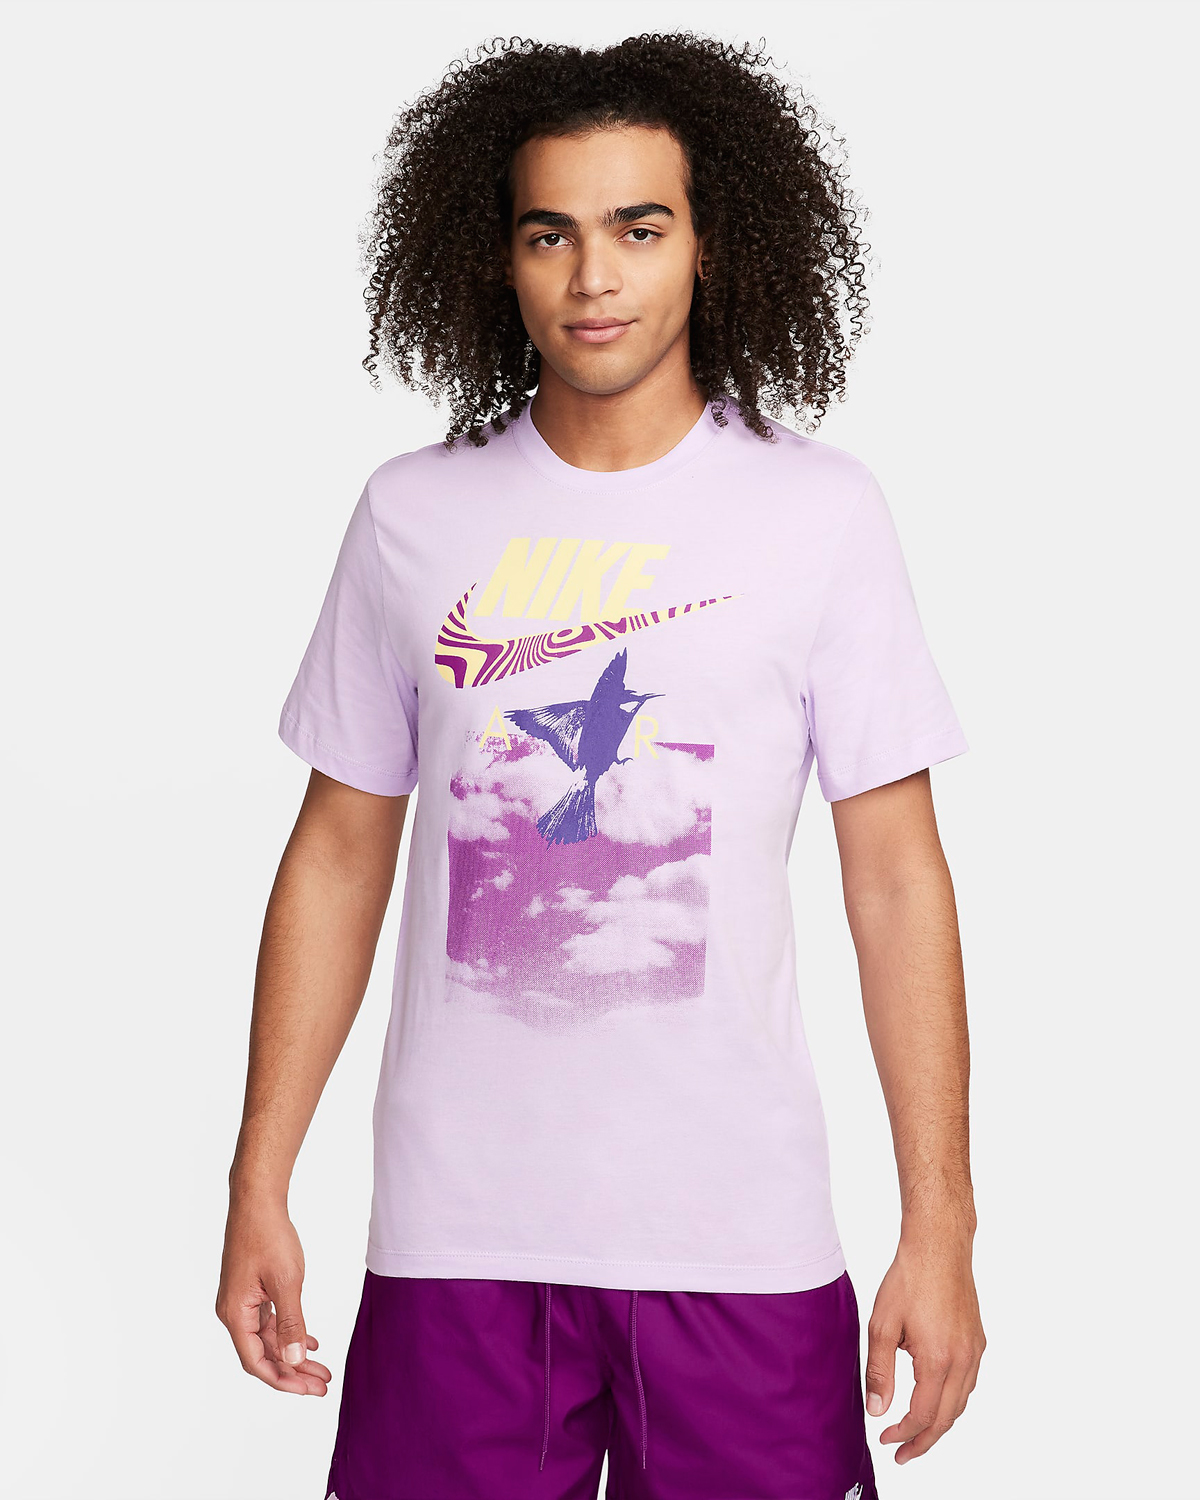 Nike Sportswear T Shirt Violet Mist Purple